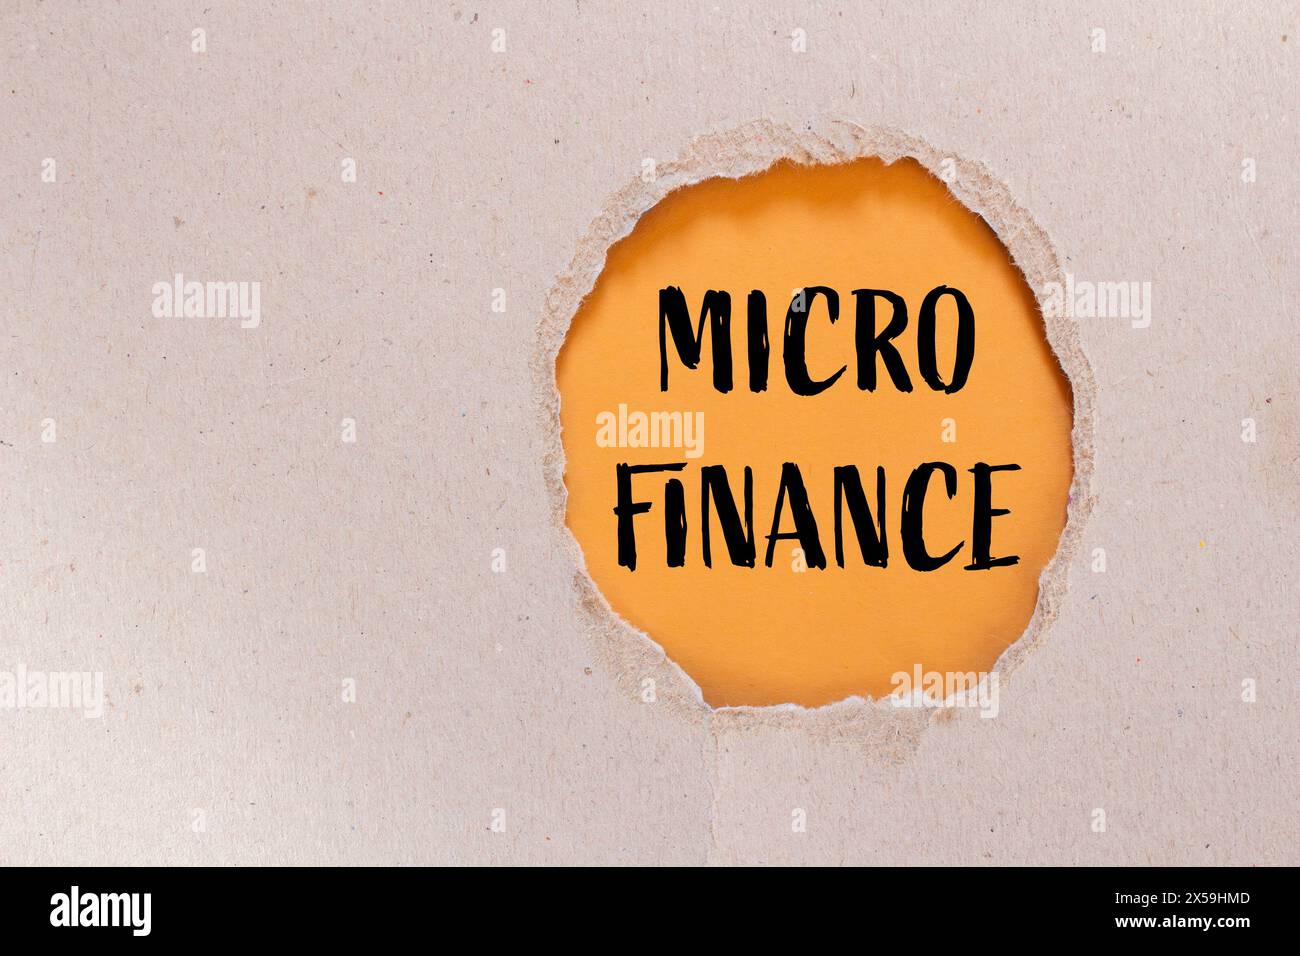 Wörter aus Mikrofinanzen auf zerrissenem Papier mit orangem Hintergrund. Konzeptionelles Geschäftssymbol für Mikrofinanzen. Kopierbereich. Stockfoto